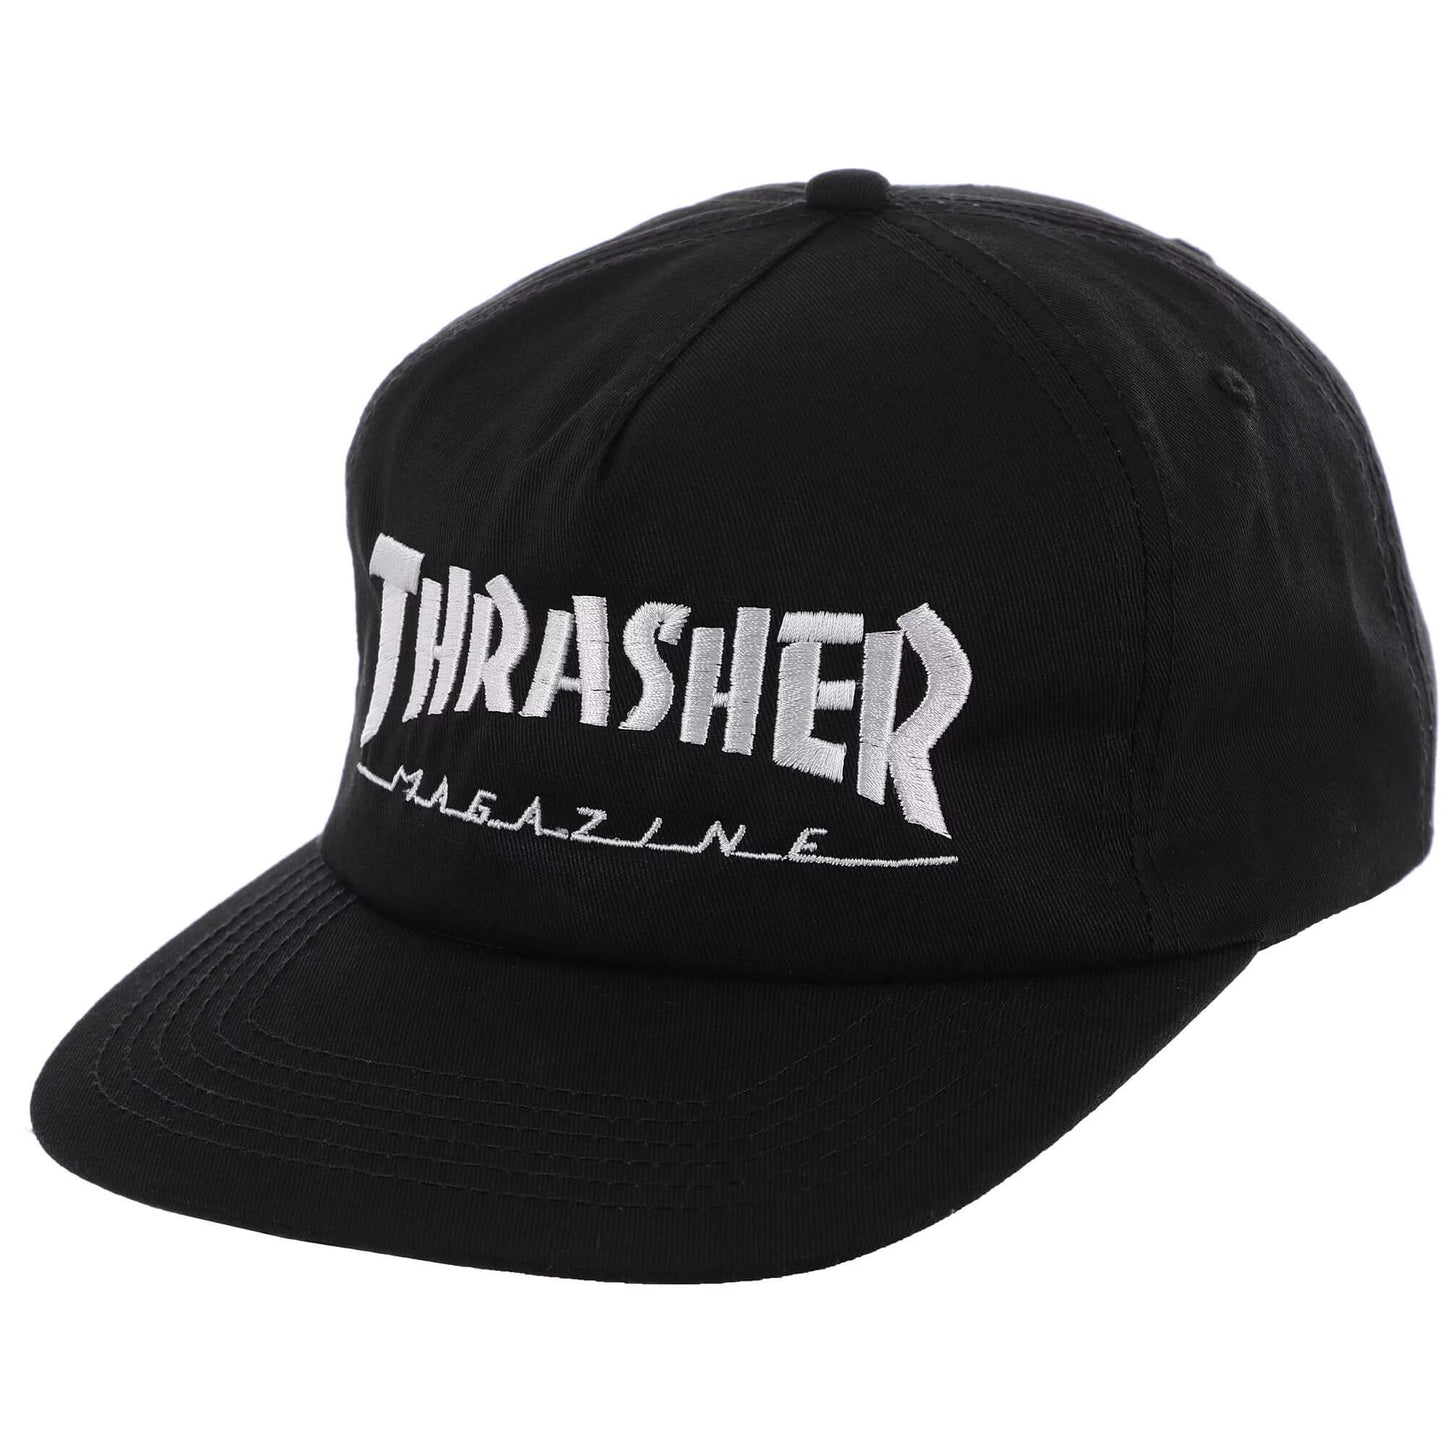 Thrasher Snapback Mag Logo Black/White